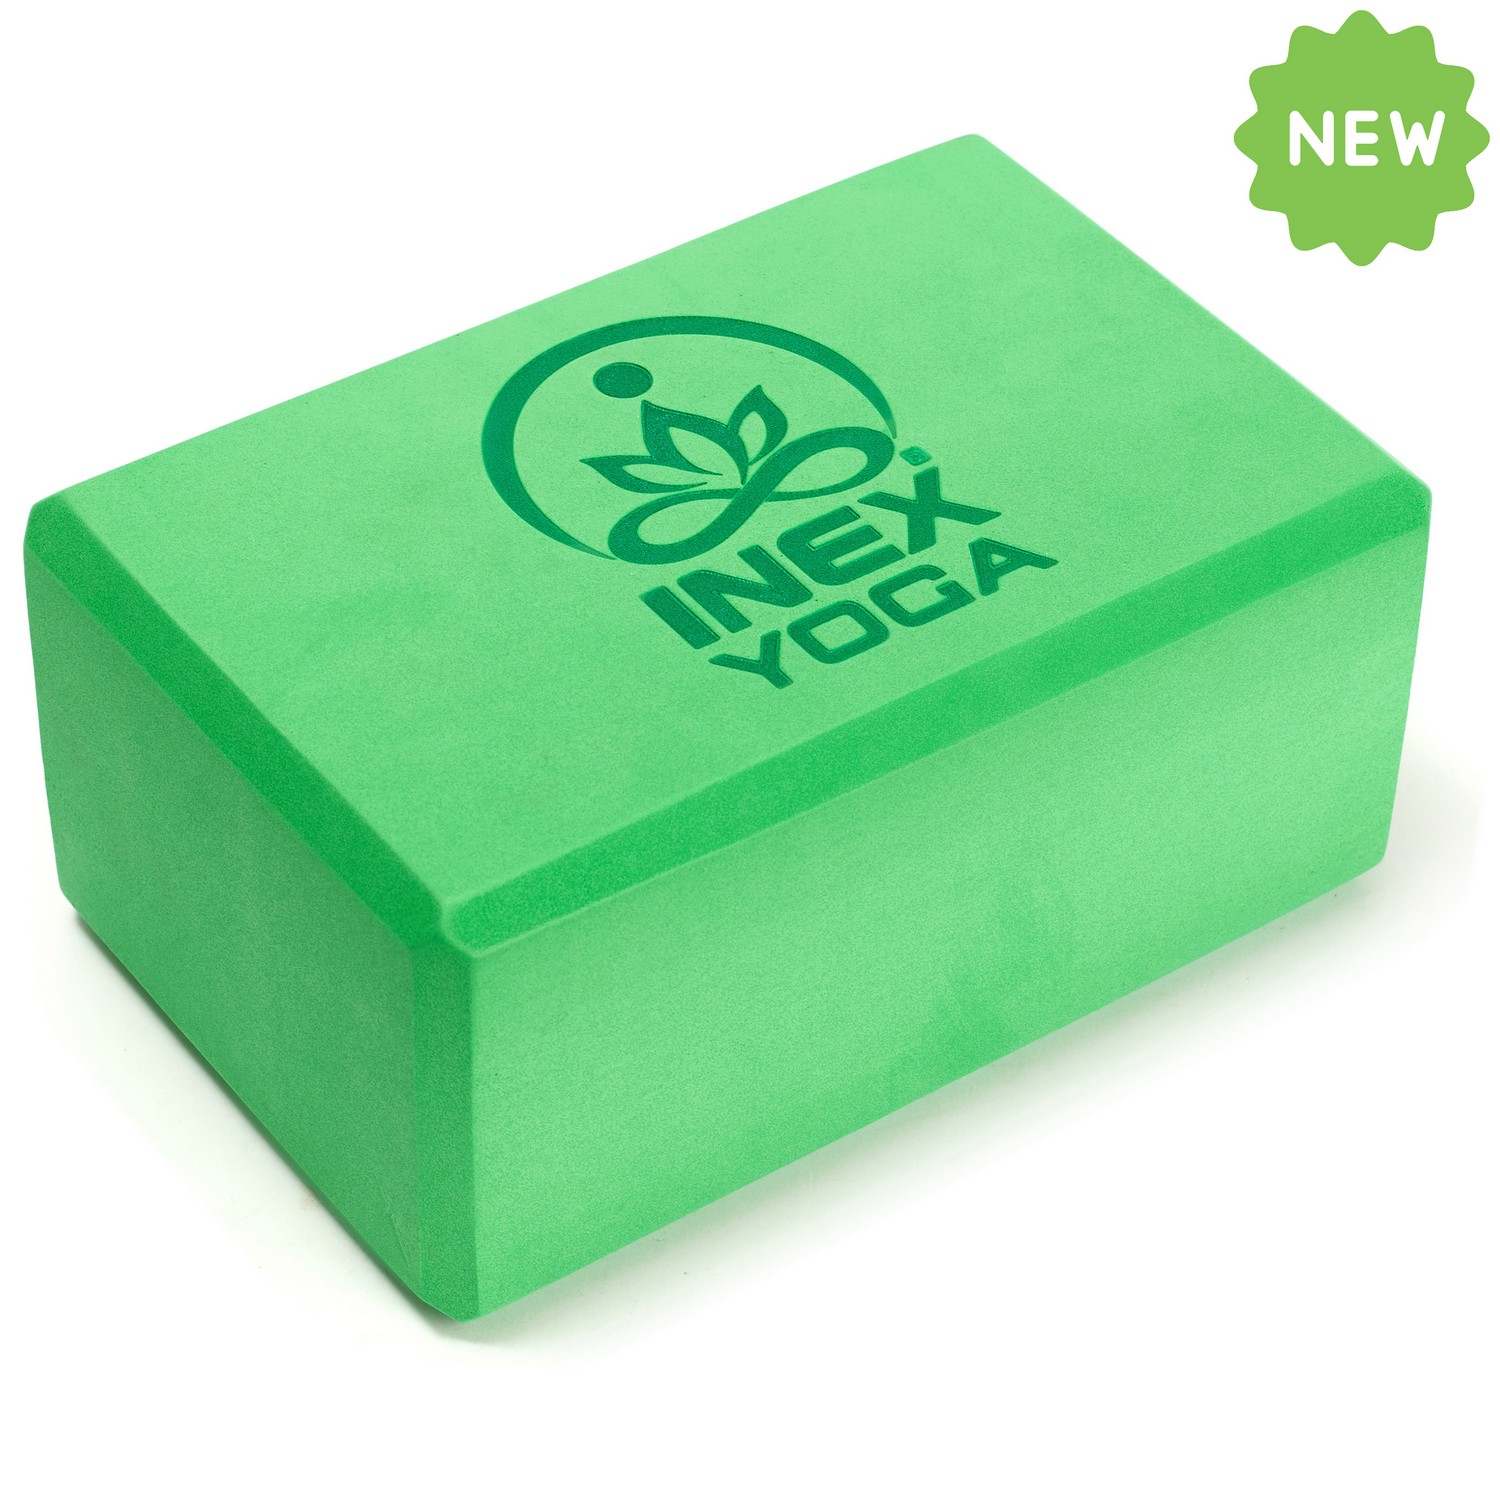 Блок для йоги Intex EVA Yoga Block YGBK-GG 23x15x10 см, зеленый,  - купить со скидкой